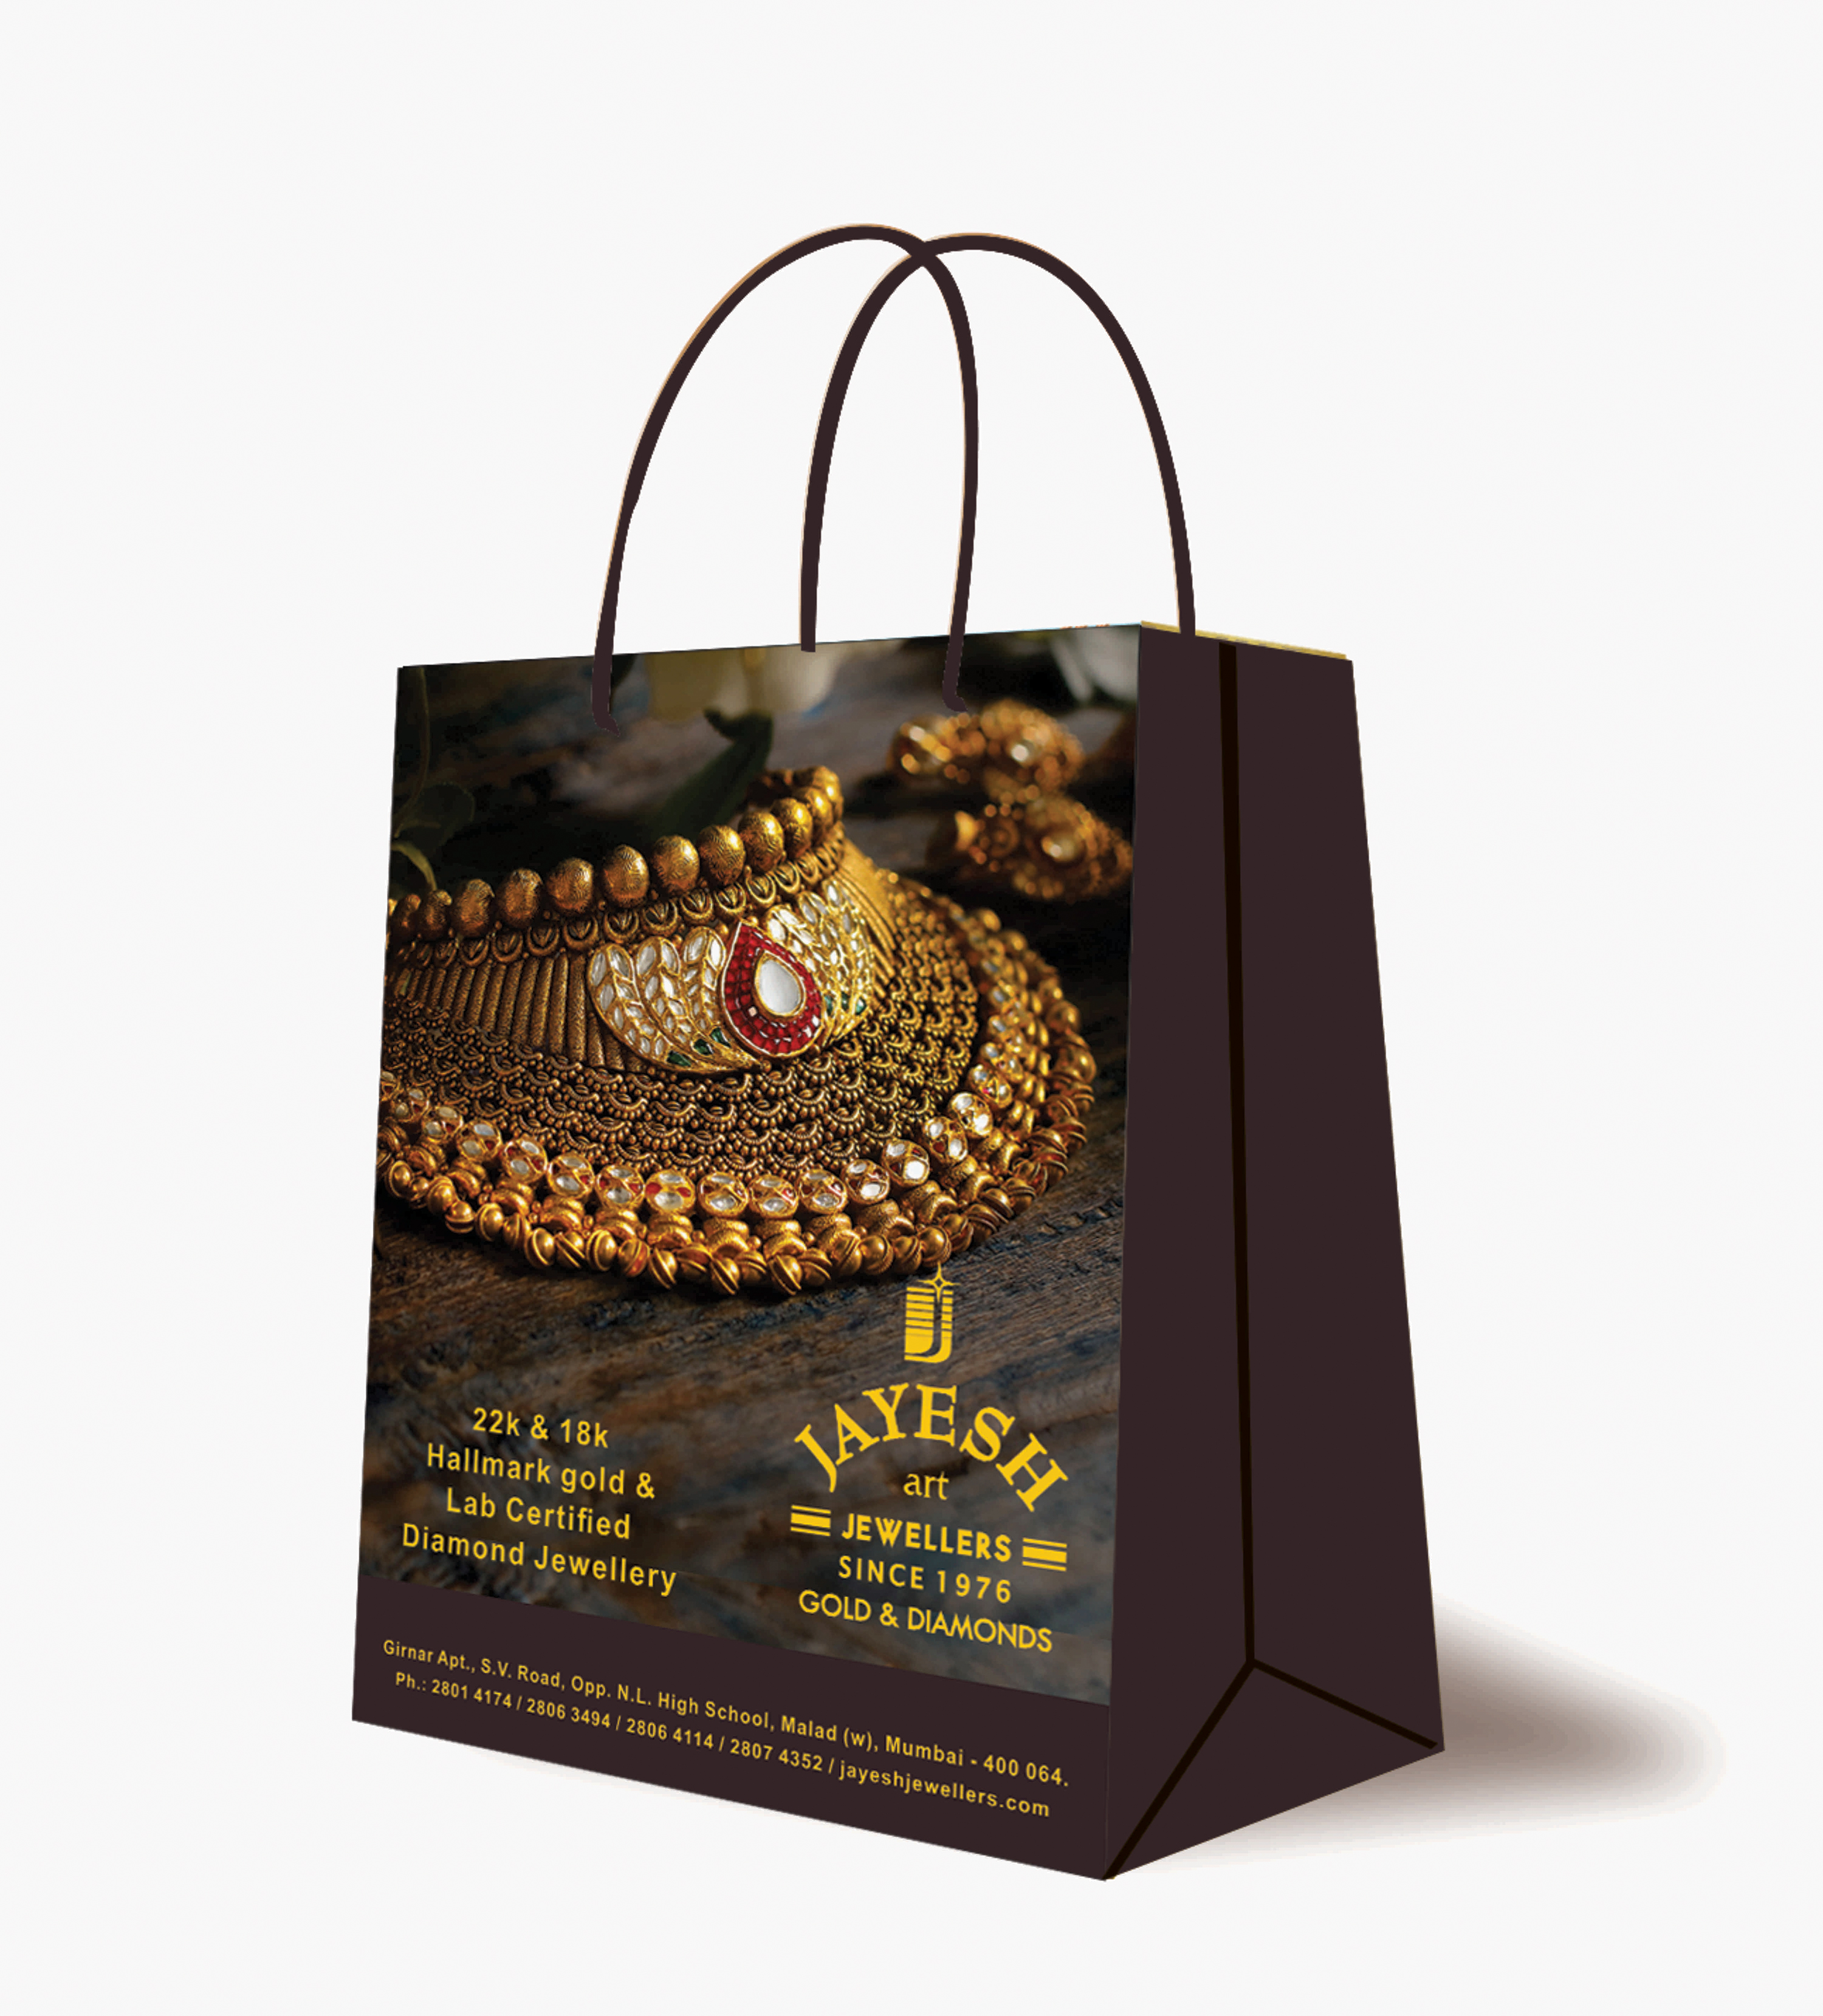 IIJS Bags For Jewellery Showroom